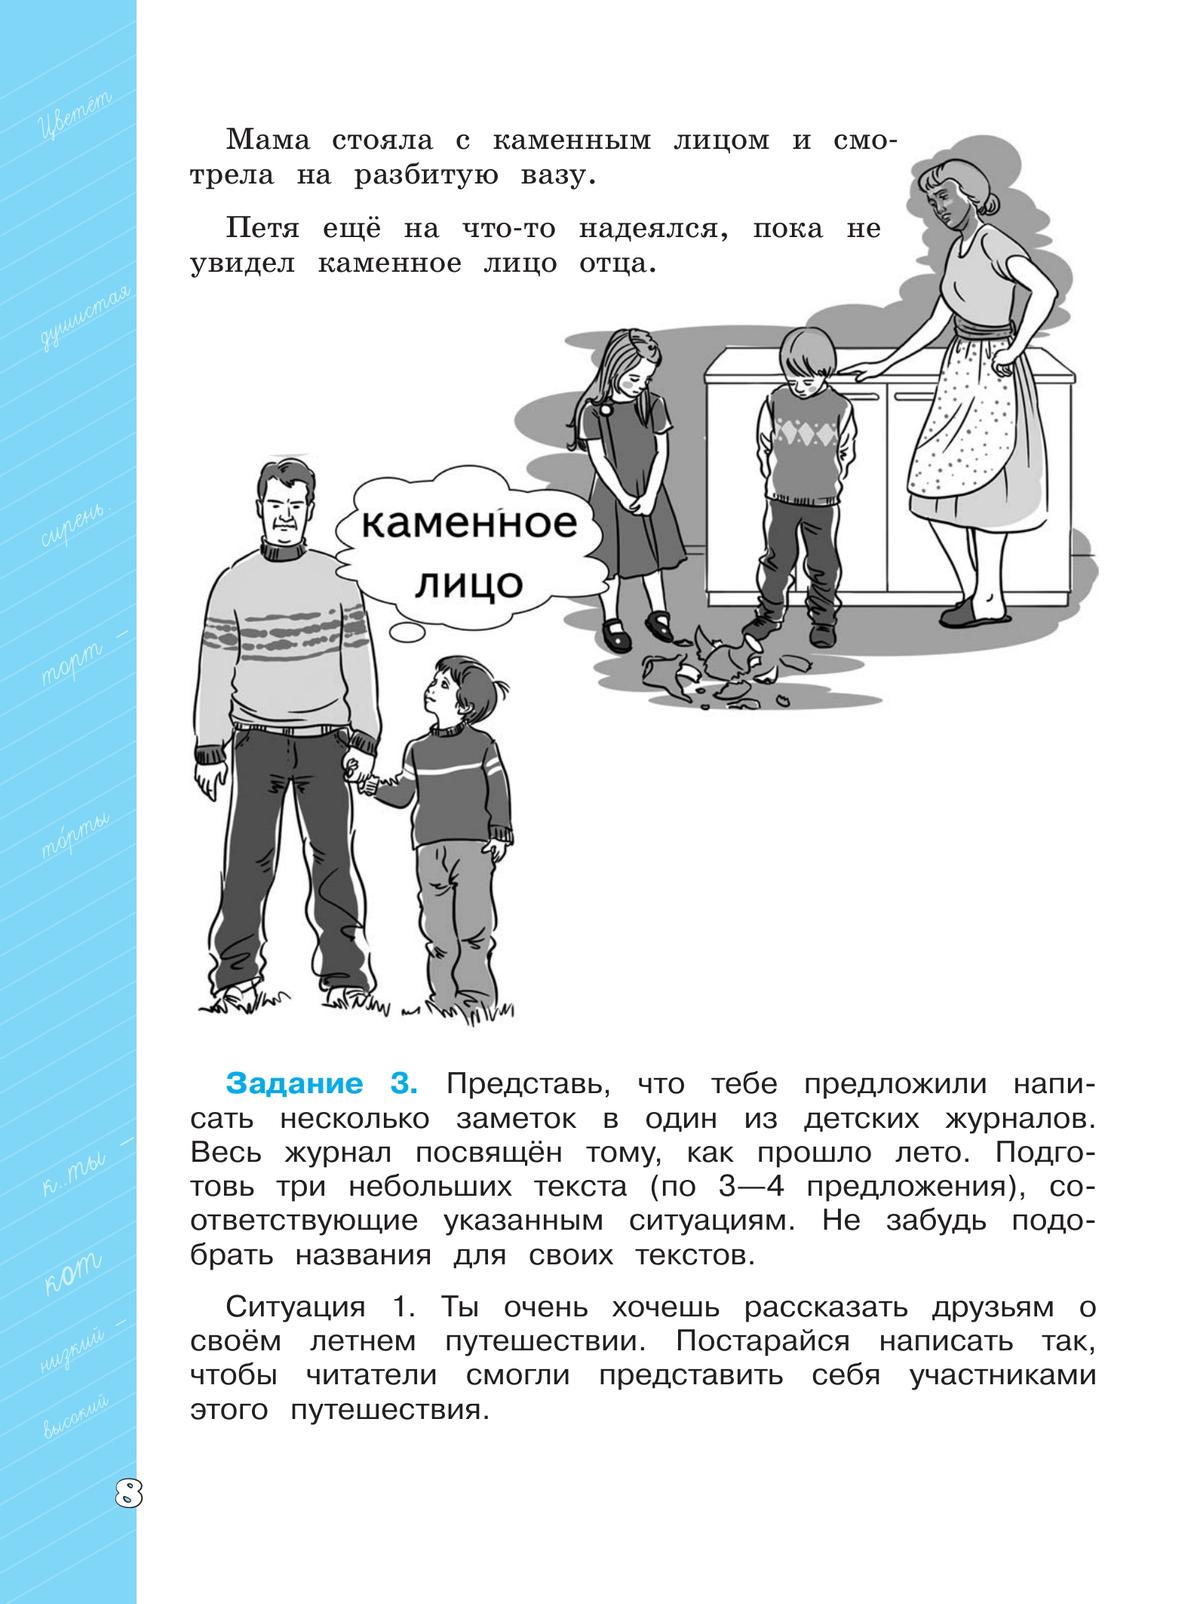 Языковая грамотность. Русский язык. Развитие. Диагностика. 4 класс 6